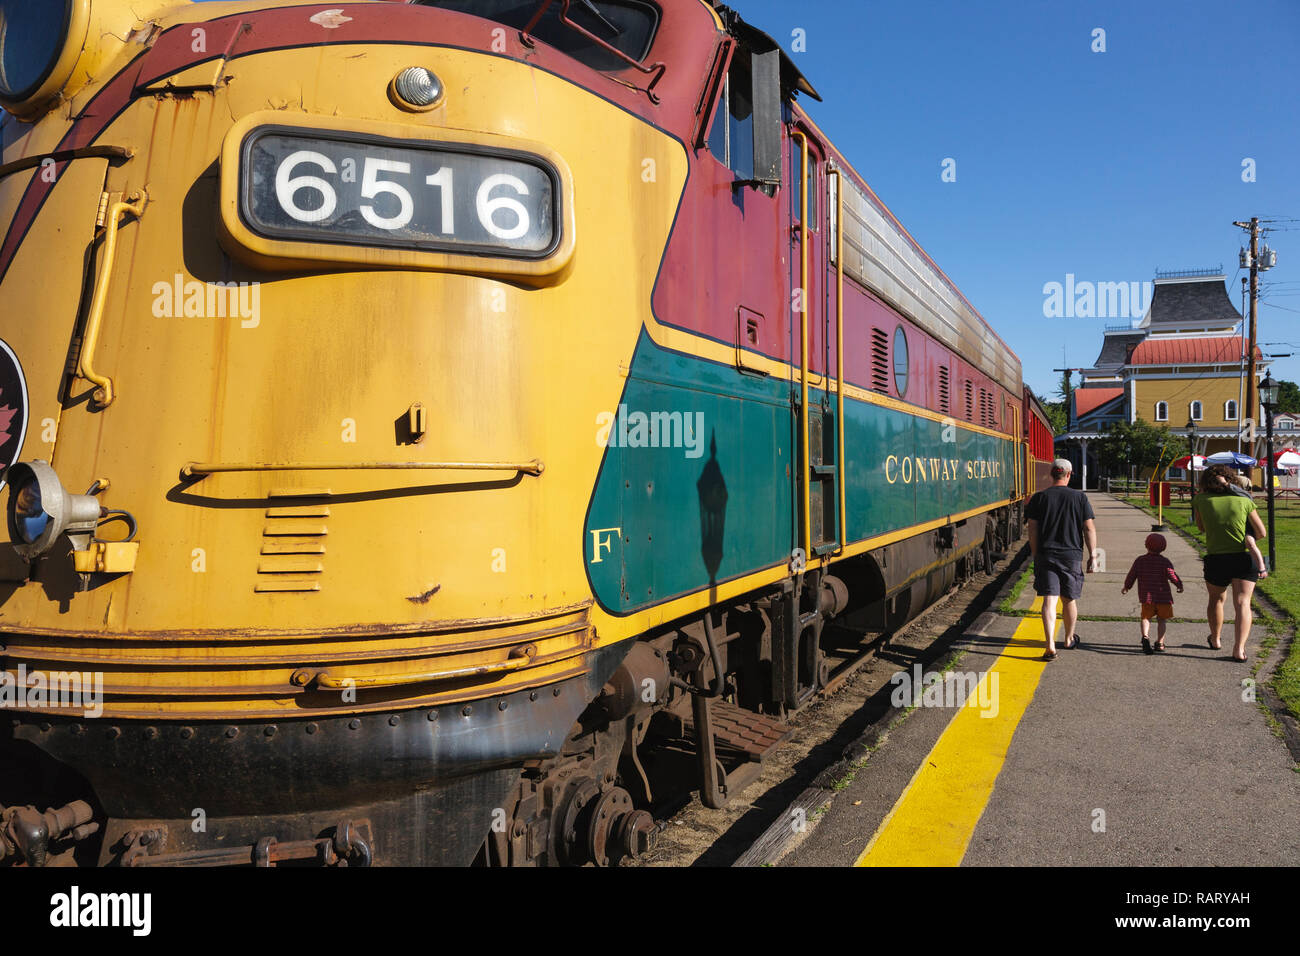 locomotive-6516-at-conway-scenic-railroa